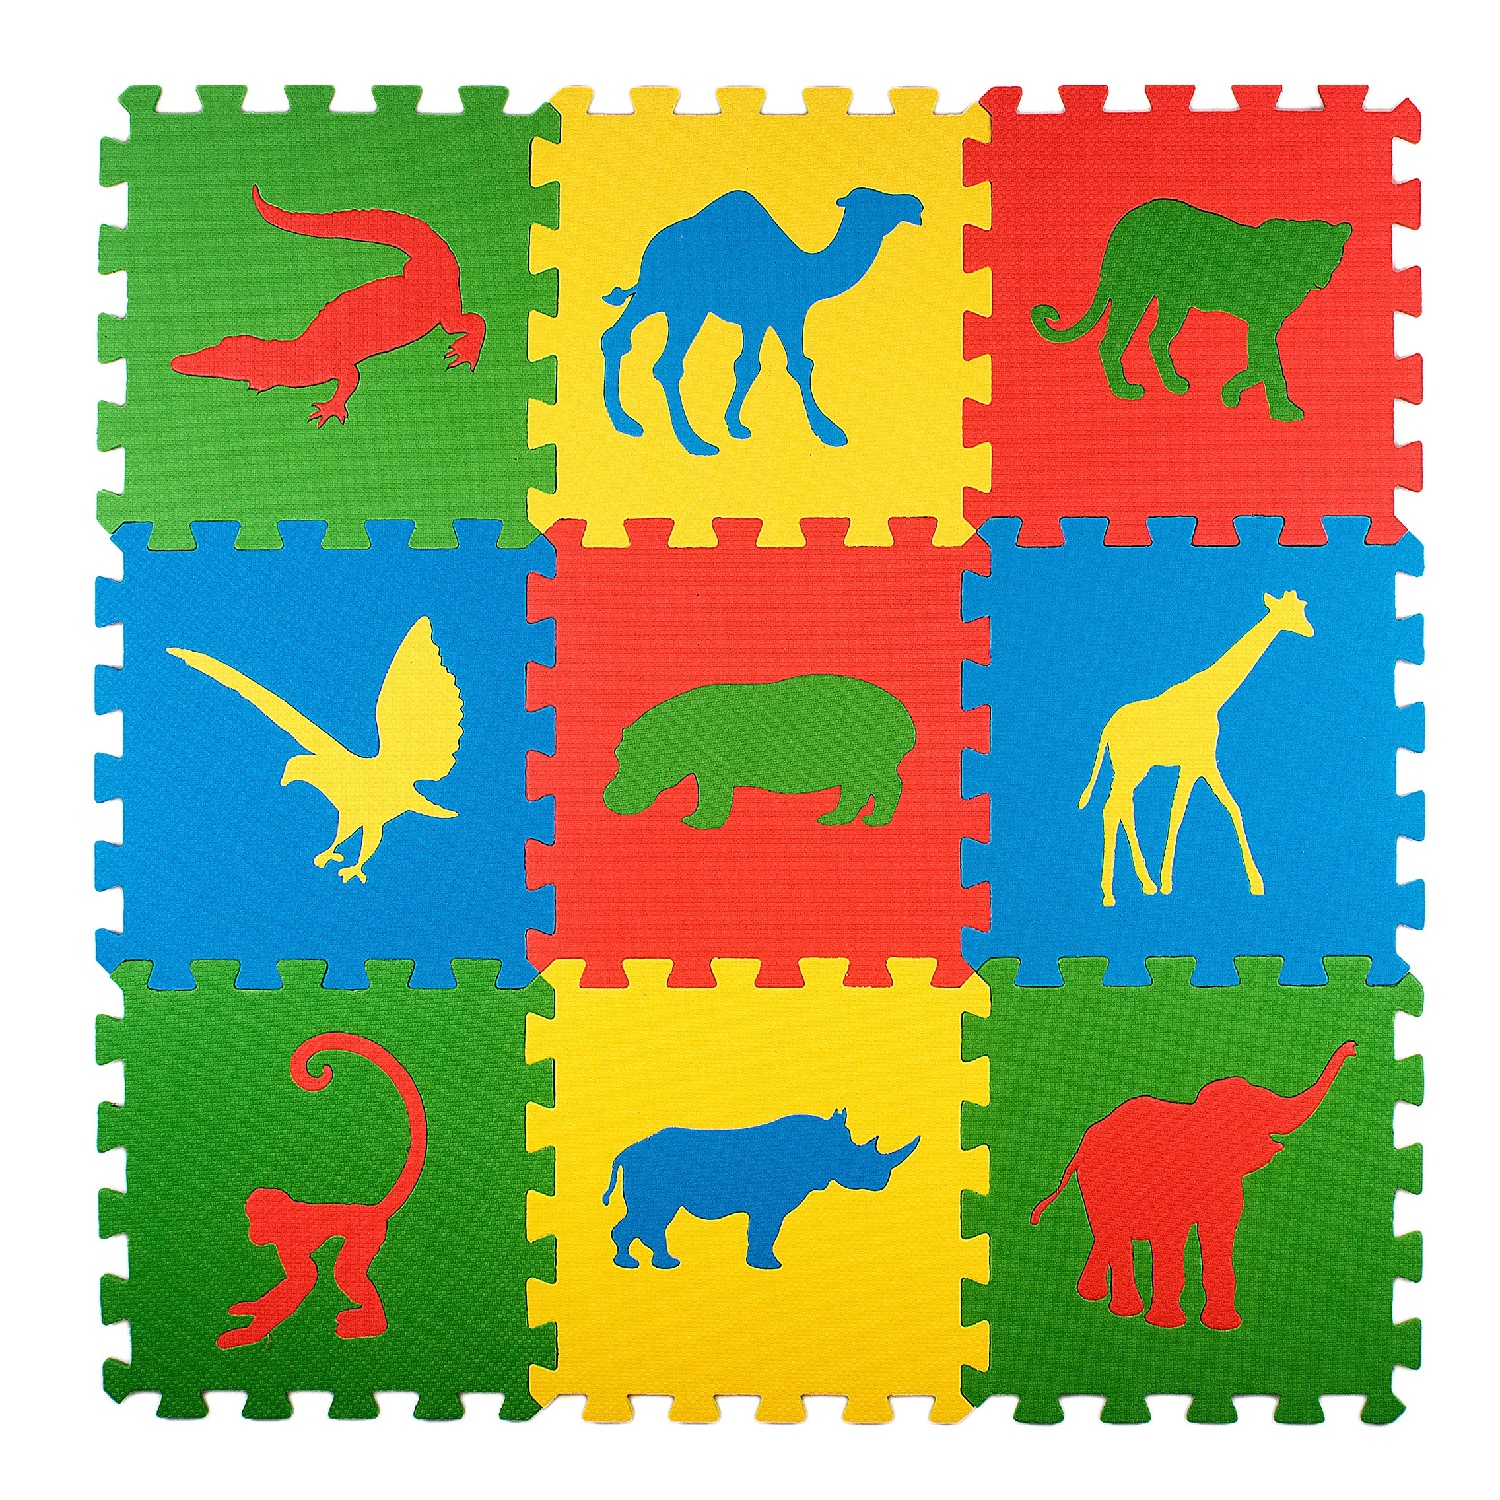 Развивающий детский коврик Eco cover игровой для ползания мягкий пол Сафари 33х33 - фото 1